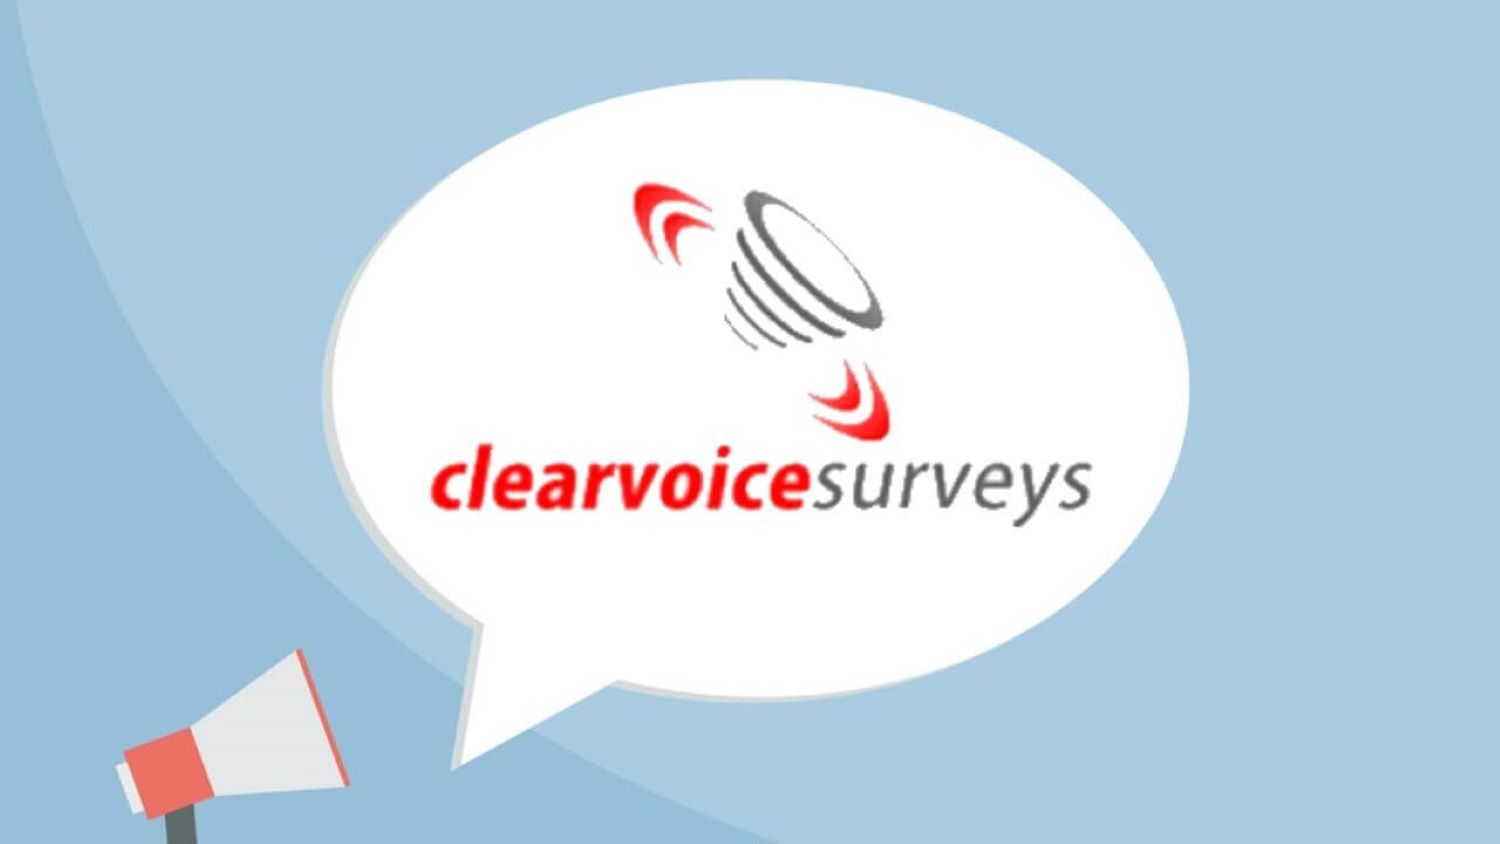 clearvoice surveys